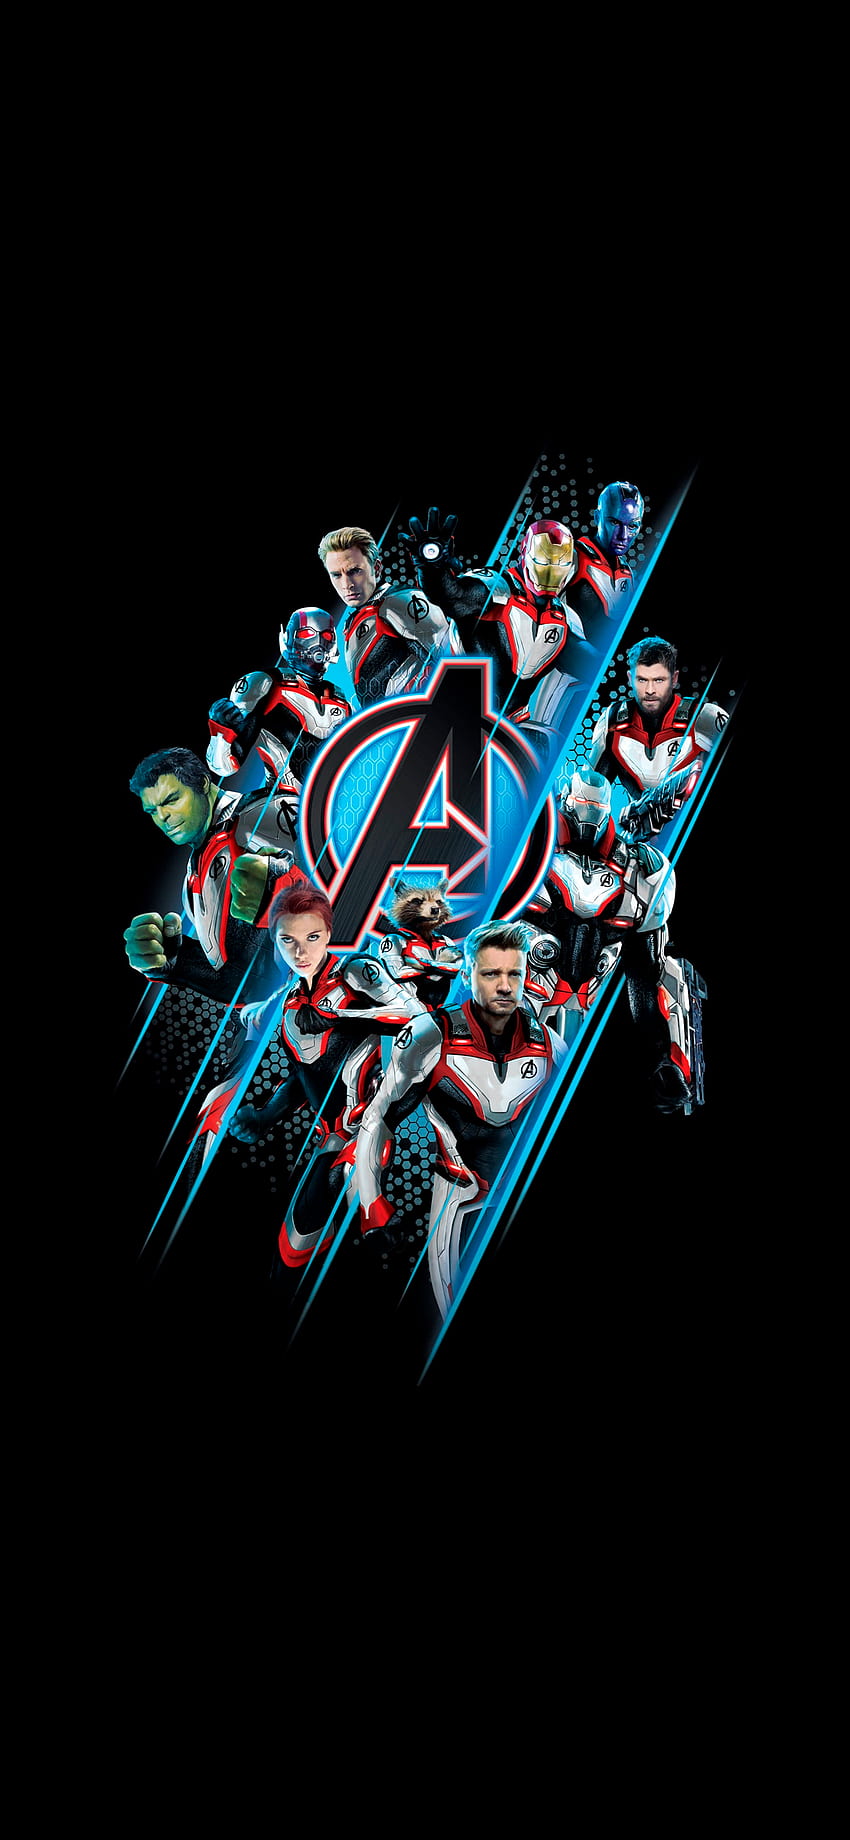 Dari Avengers, Avengers Quantum wallpaper ponsel HD